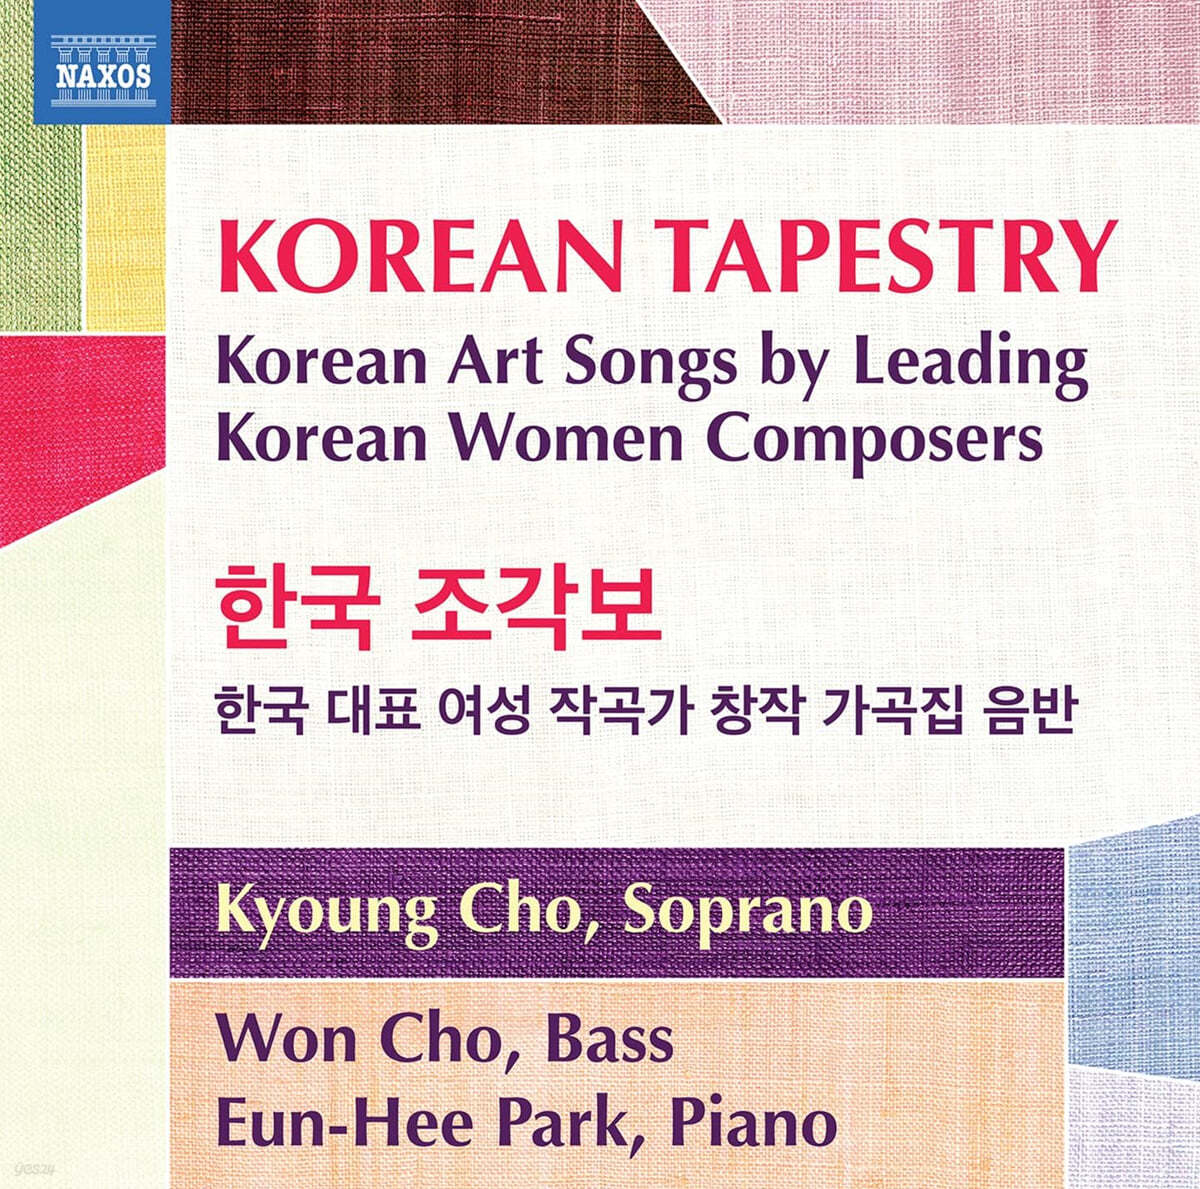 한국 조각보 - 한국을 대표하는 여성 작곡가들의 가곡 작품집 (Korean Tapestry)